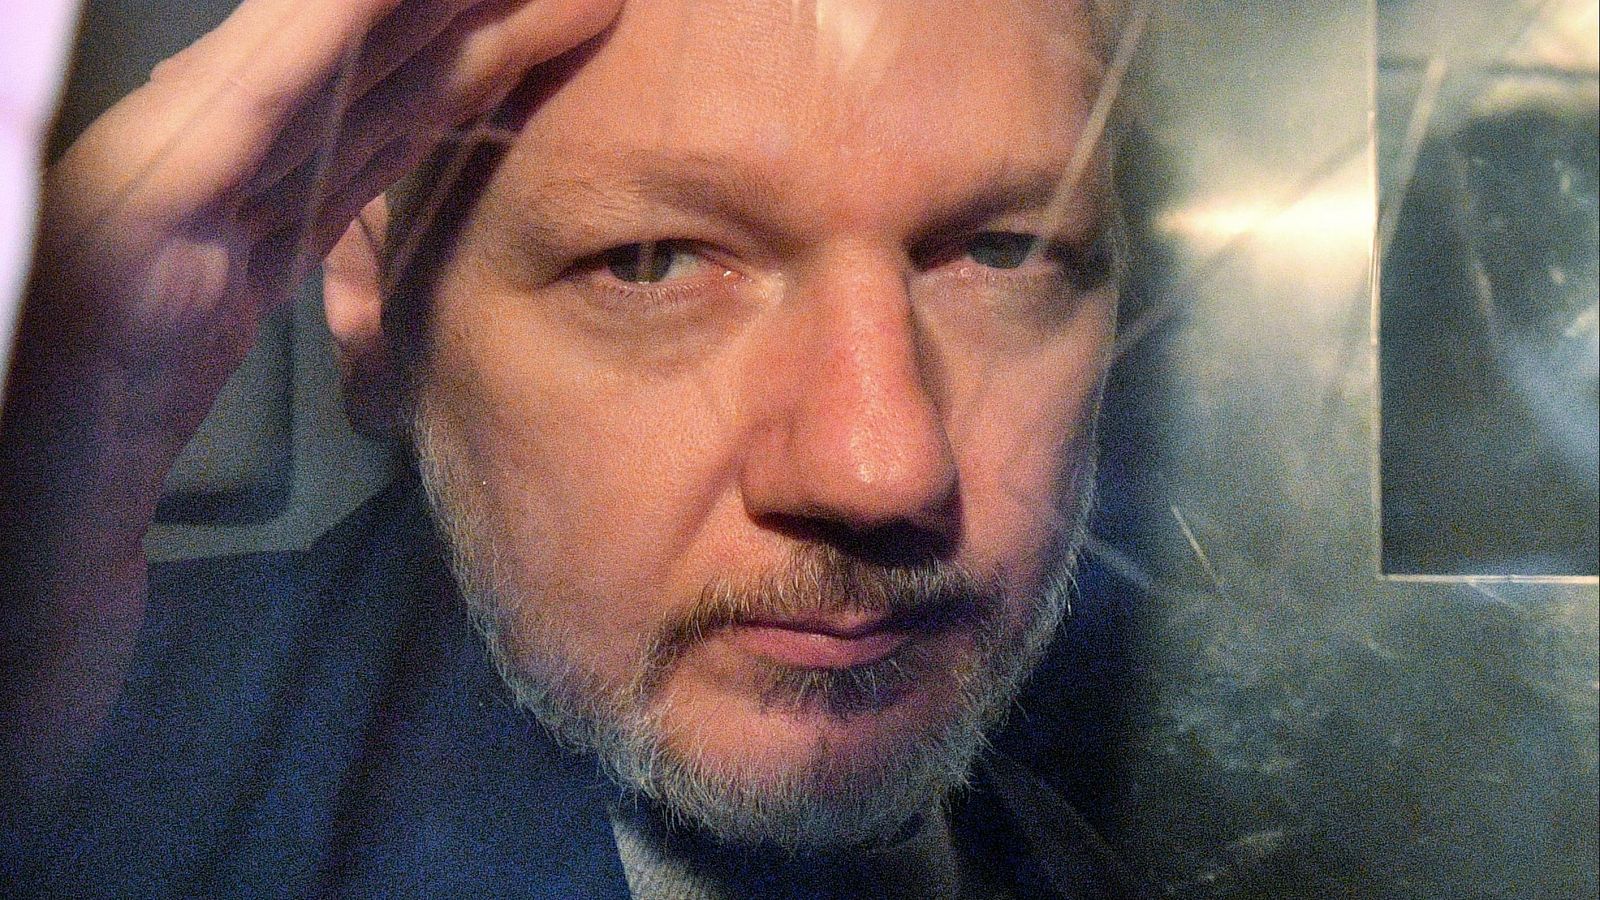 Caso Assange: La Justicia británica decide si autoriza la extradición de Assange a Estados Unidos